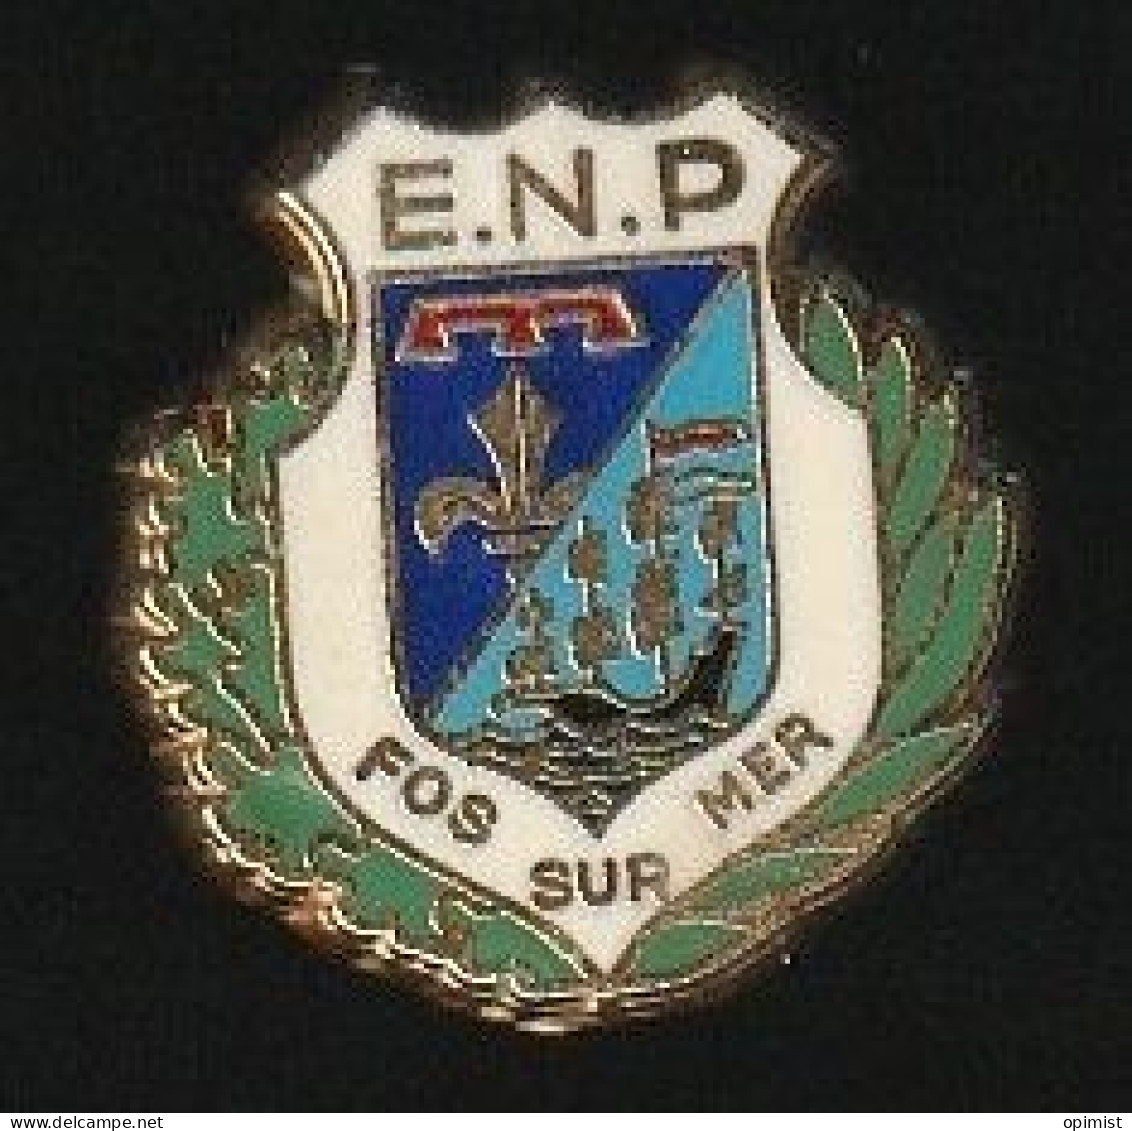 77659-Pin's .Ecole Nationale De Police De FOS Sur Mer. Sygné Y.D. - Policia